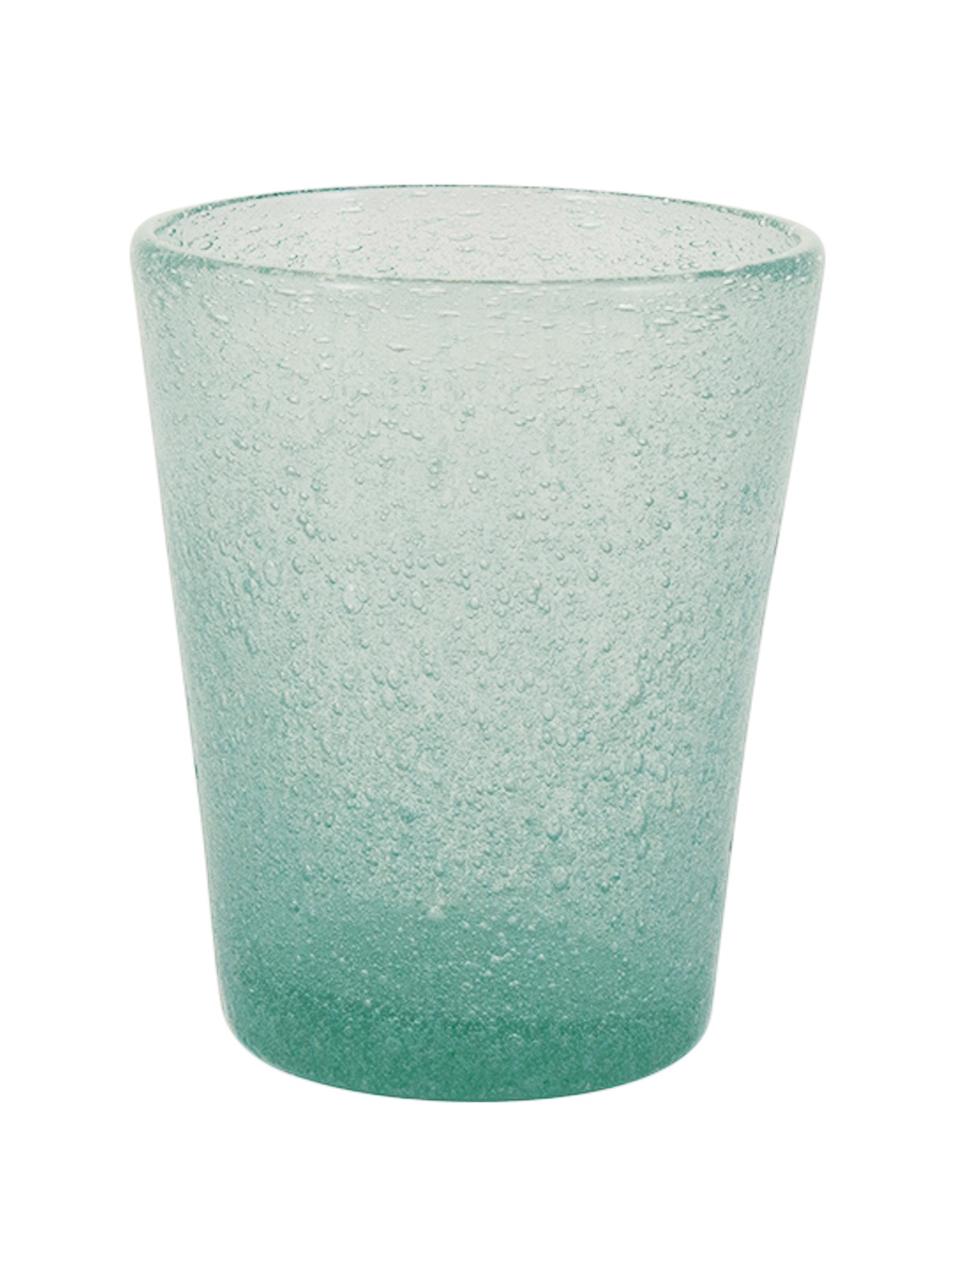 Mondgeblazen waterglazen Cancun met luchtholten, 6 stuks, Mondgeblazen glas, Groen, Ø 9 x H 10 cm